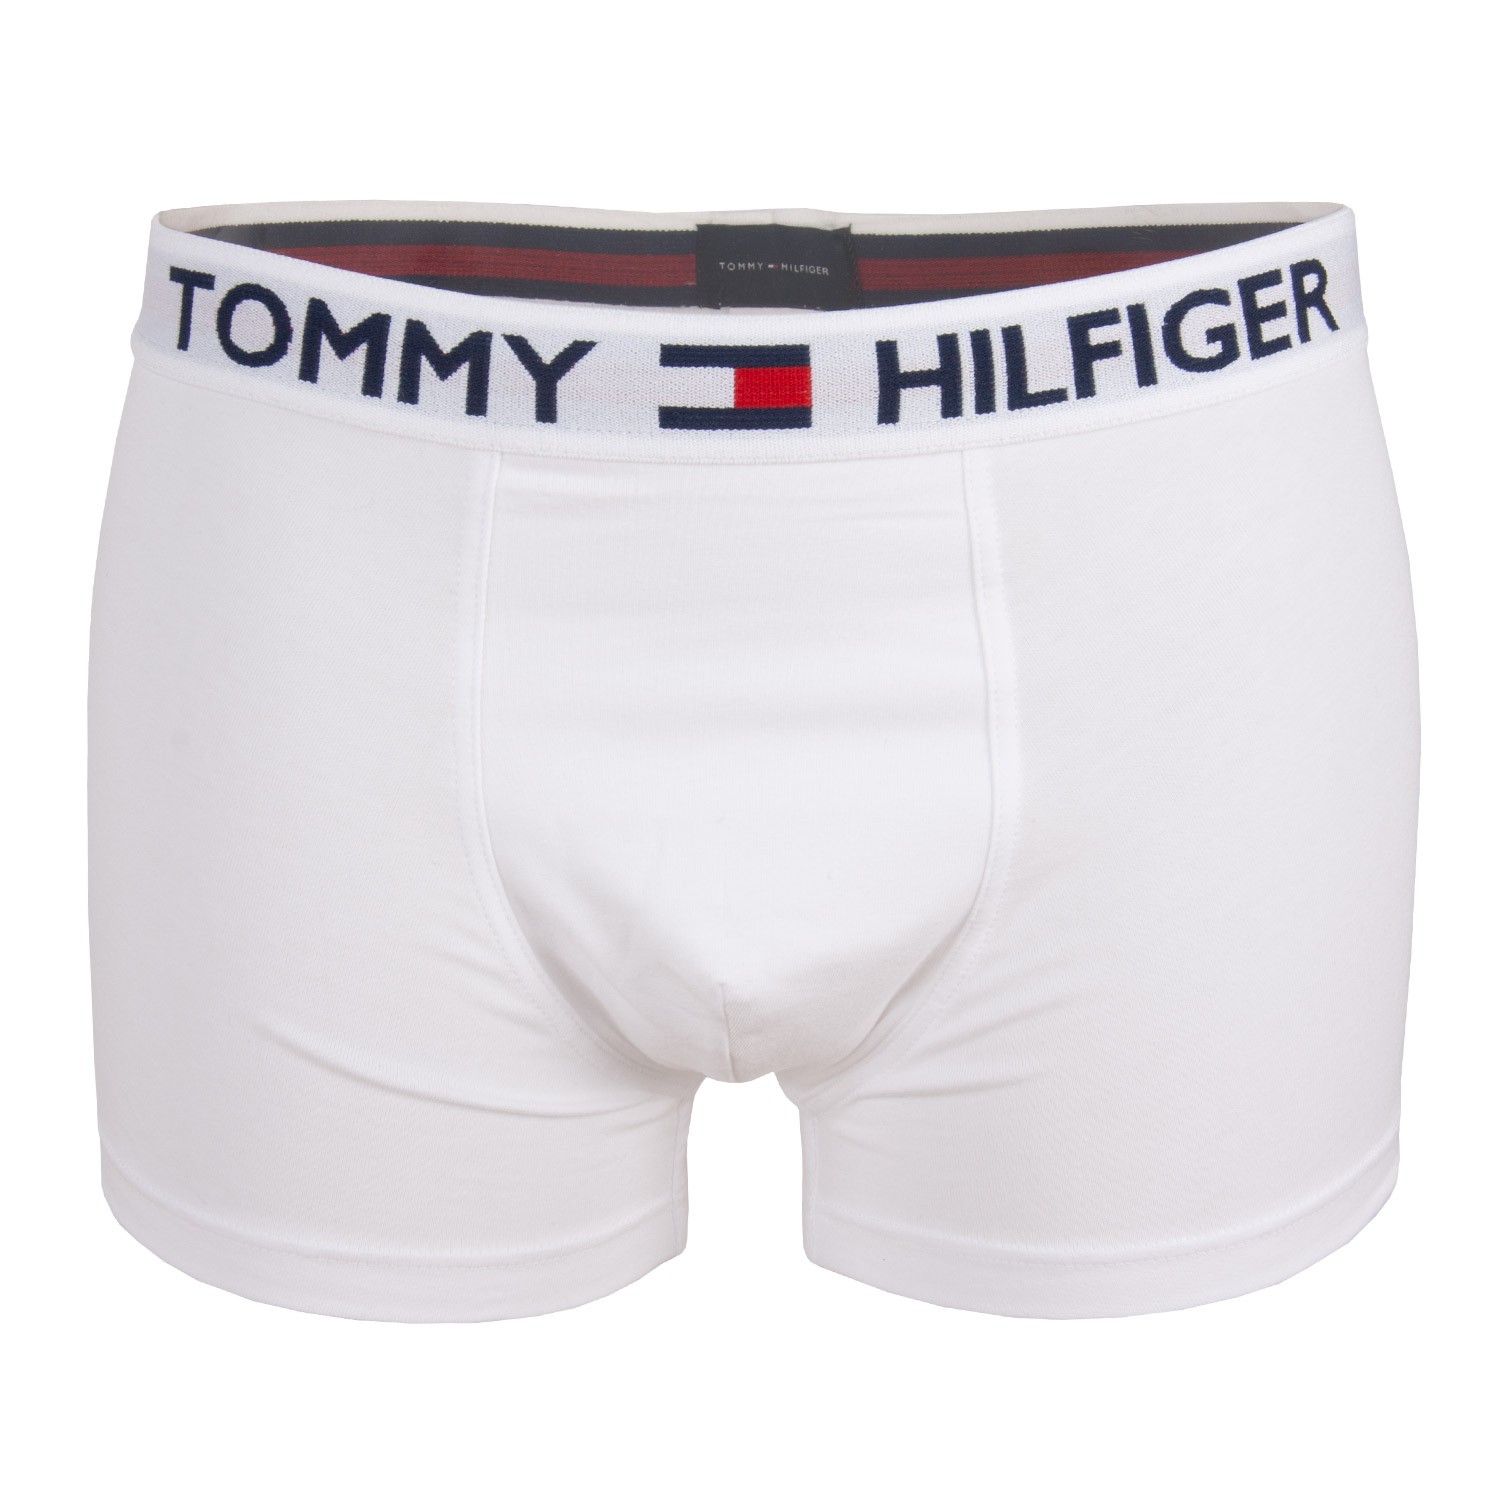 tommy hilfiger uk underwear